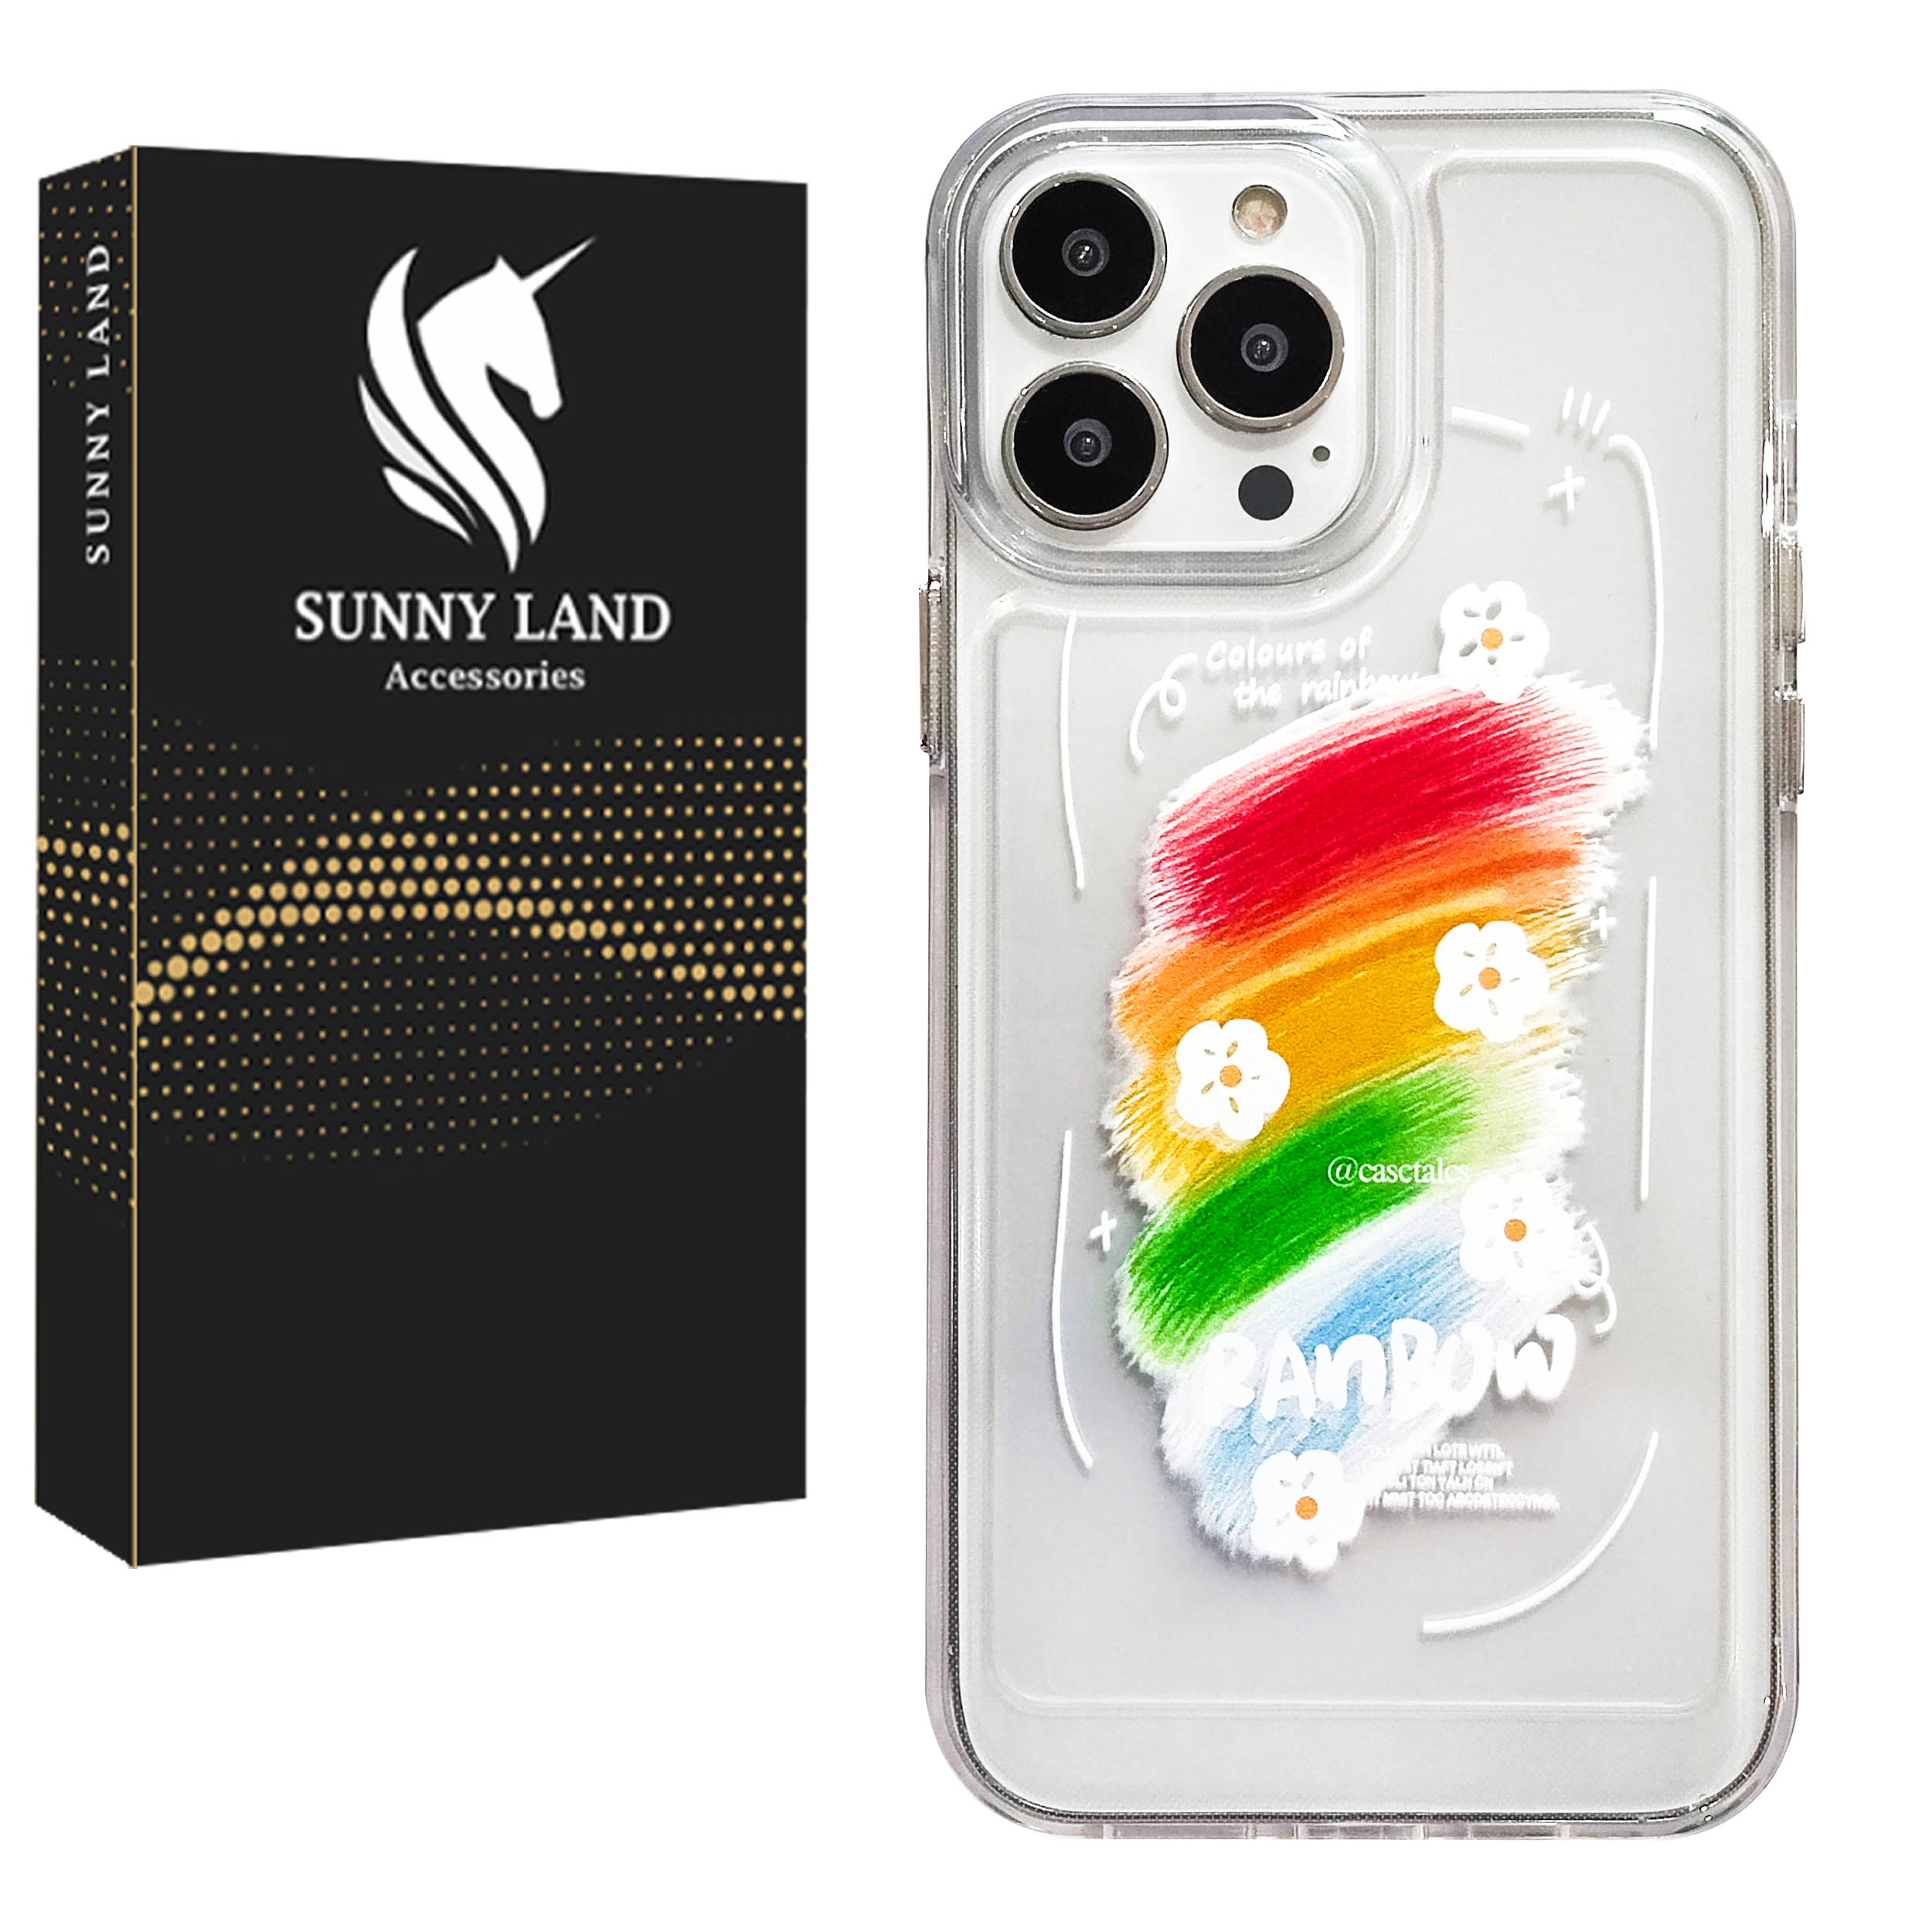 کاور سانی لند مدل Rainbow مناسب برای گوشی موبایل اپل iPhone 12 Pro Max